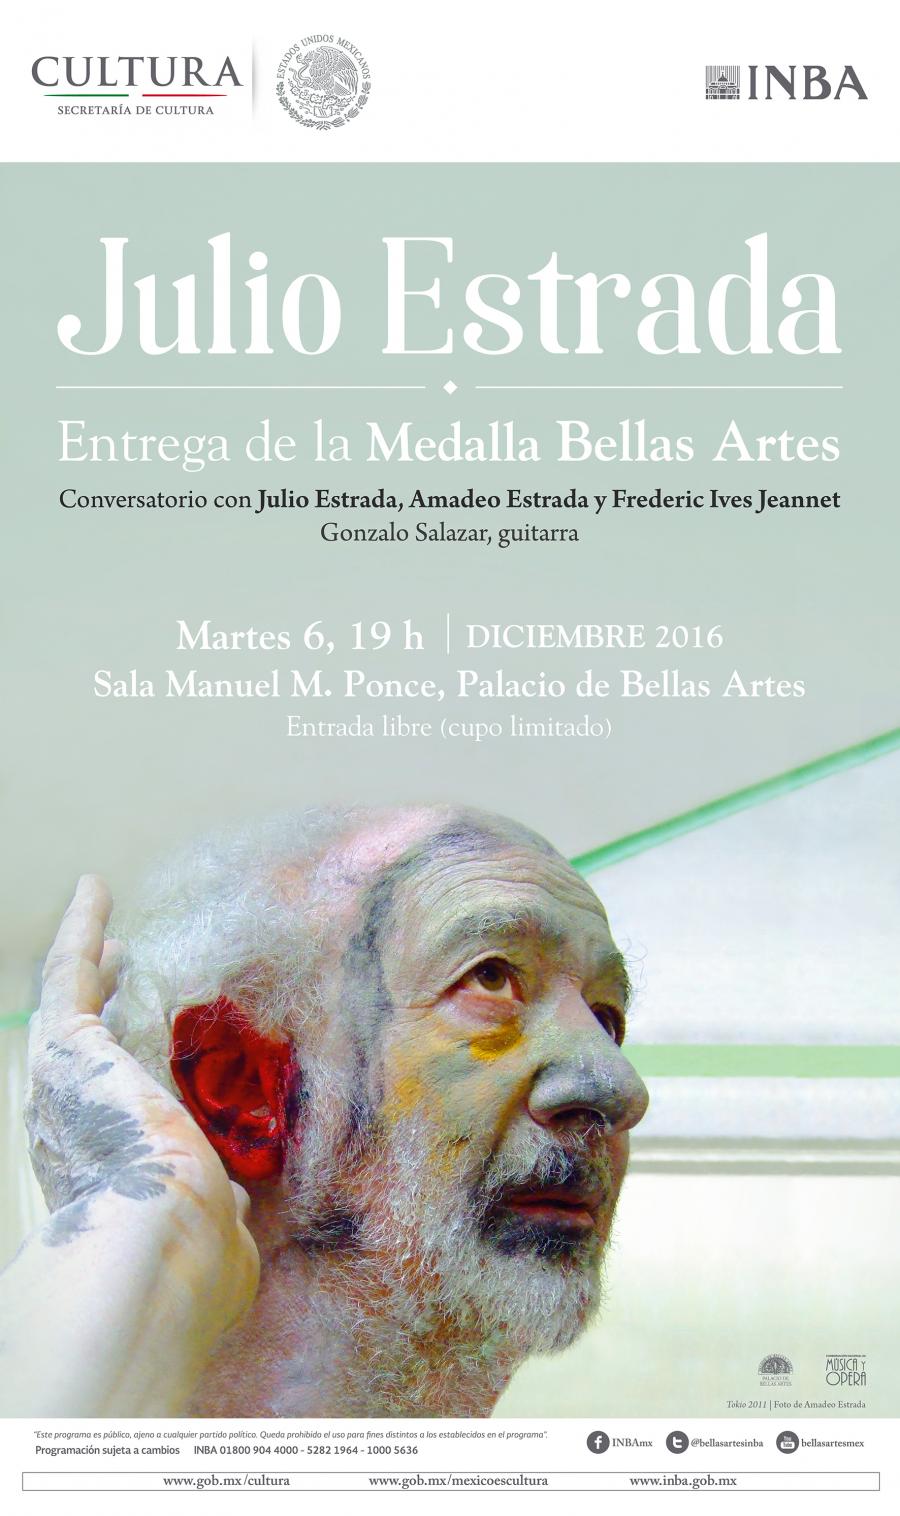 El compositor mexicano Julio Estrada recibirá la Medalla Bellas Artes